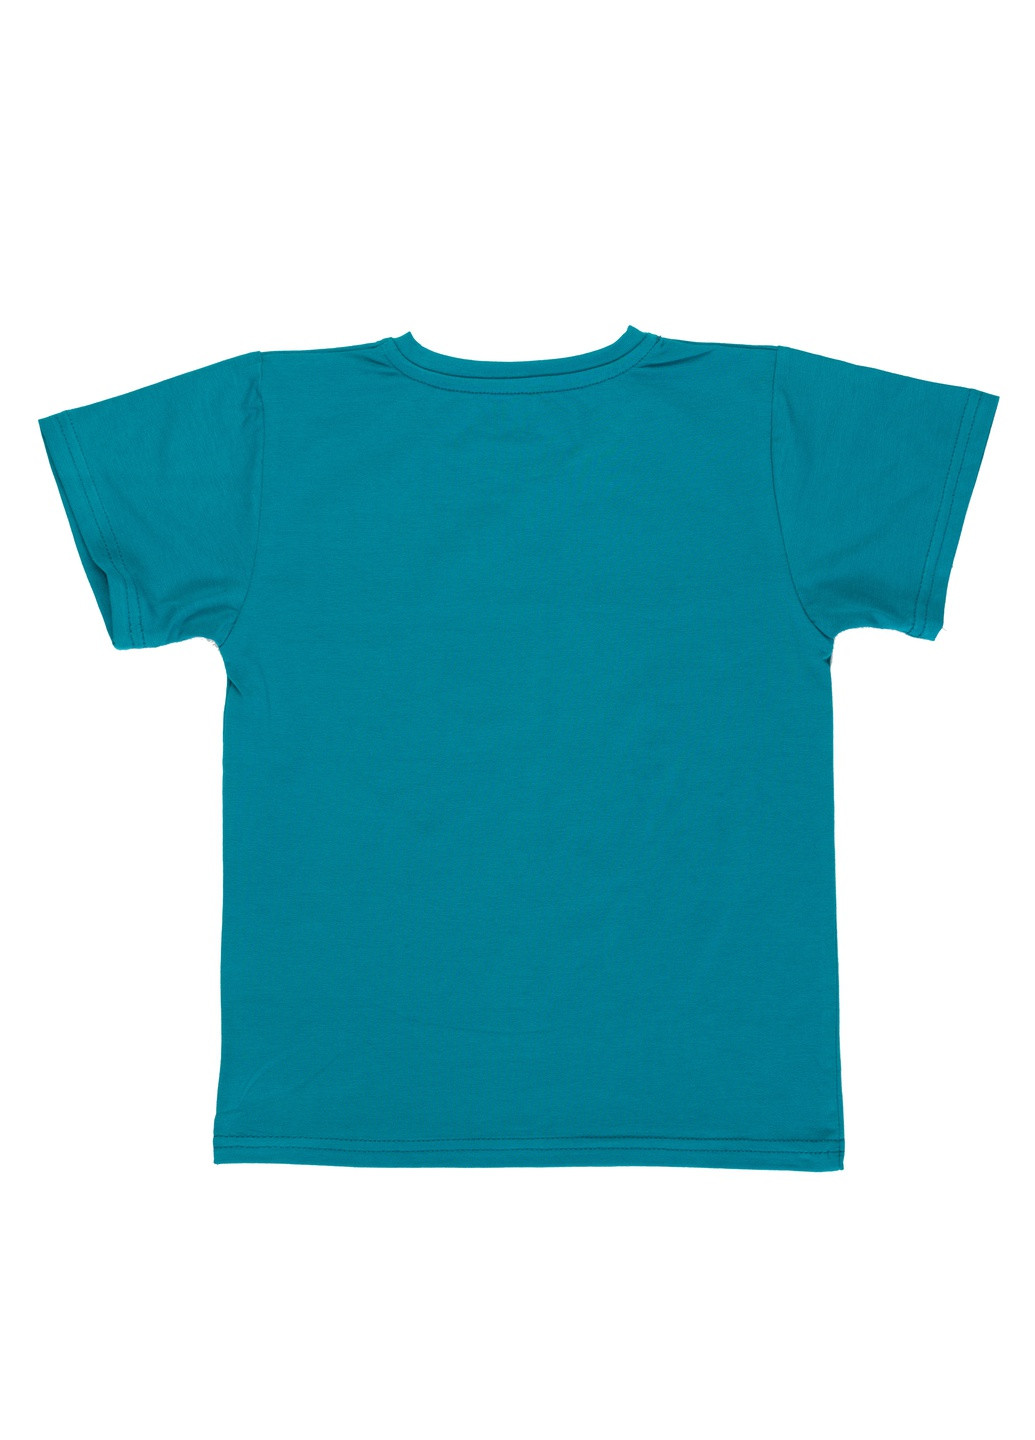 Бирюзовая летняя стильная футболка для мальчика Фламинго Текстиль